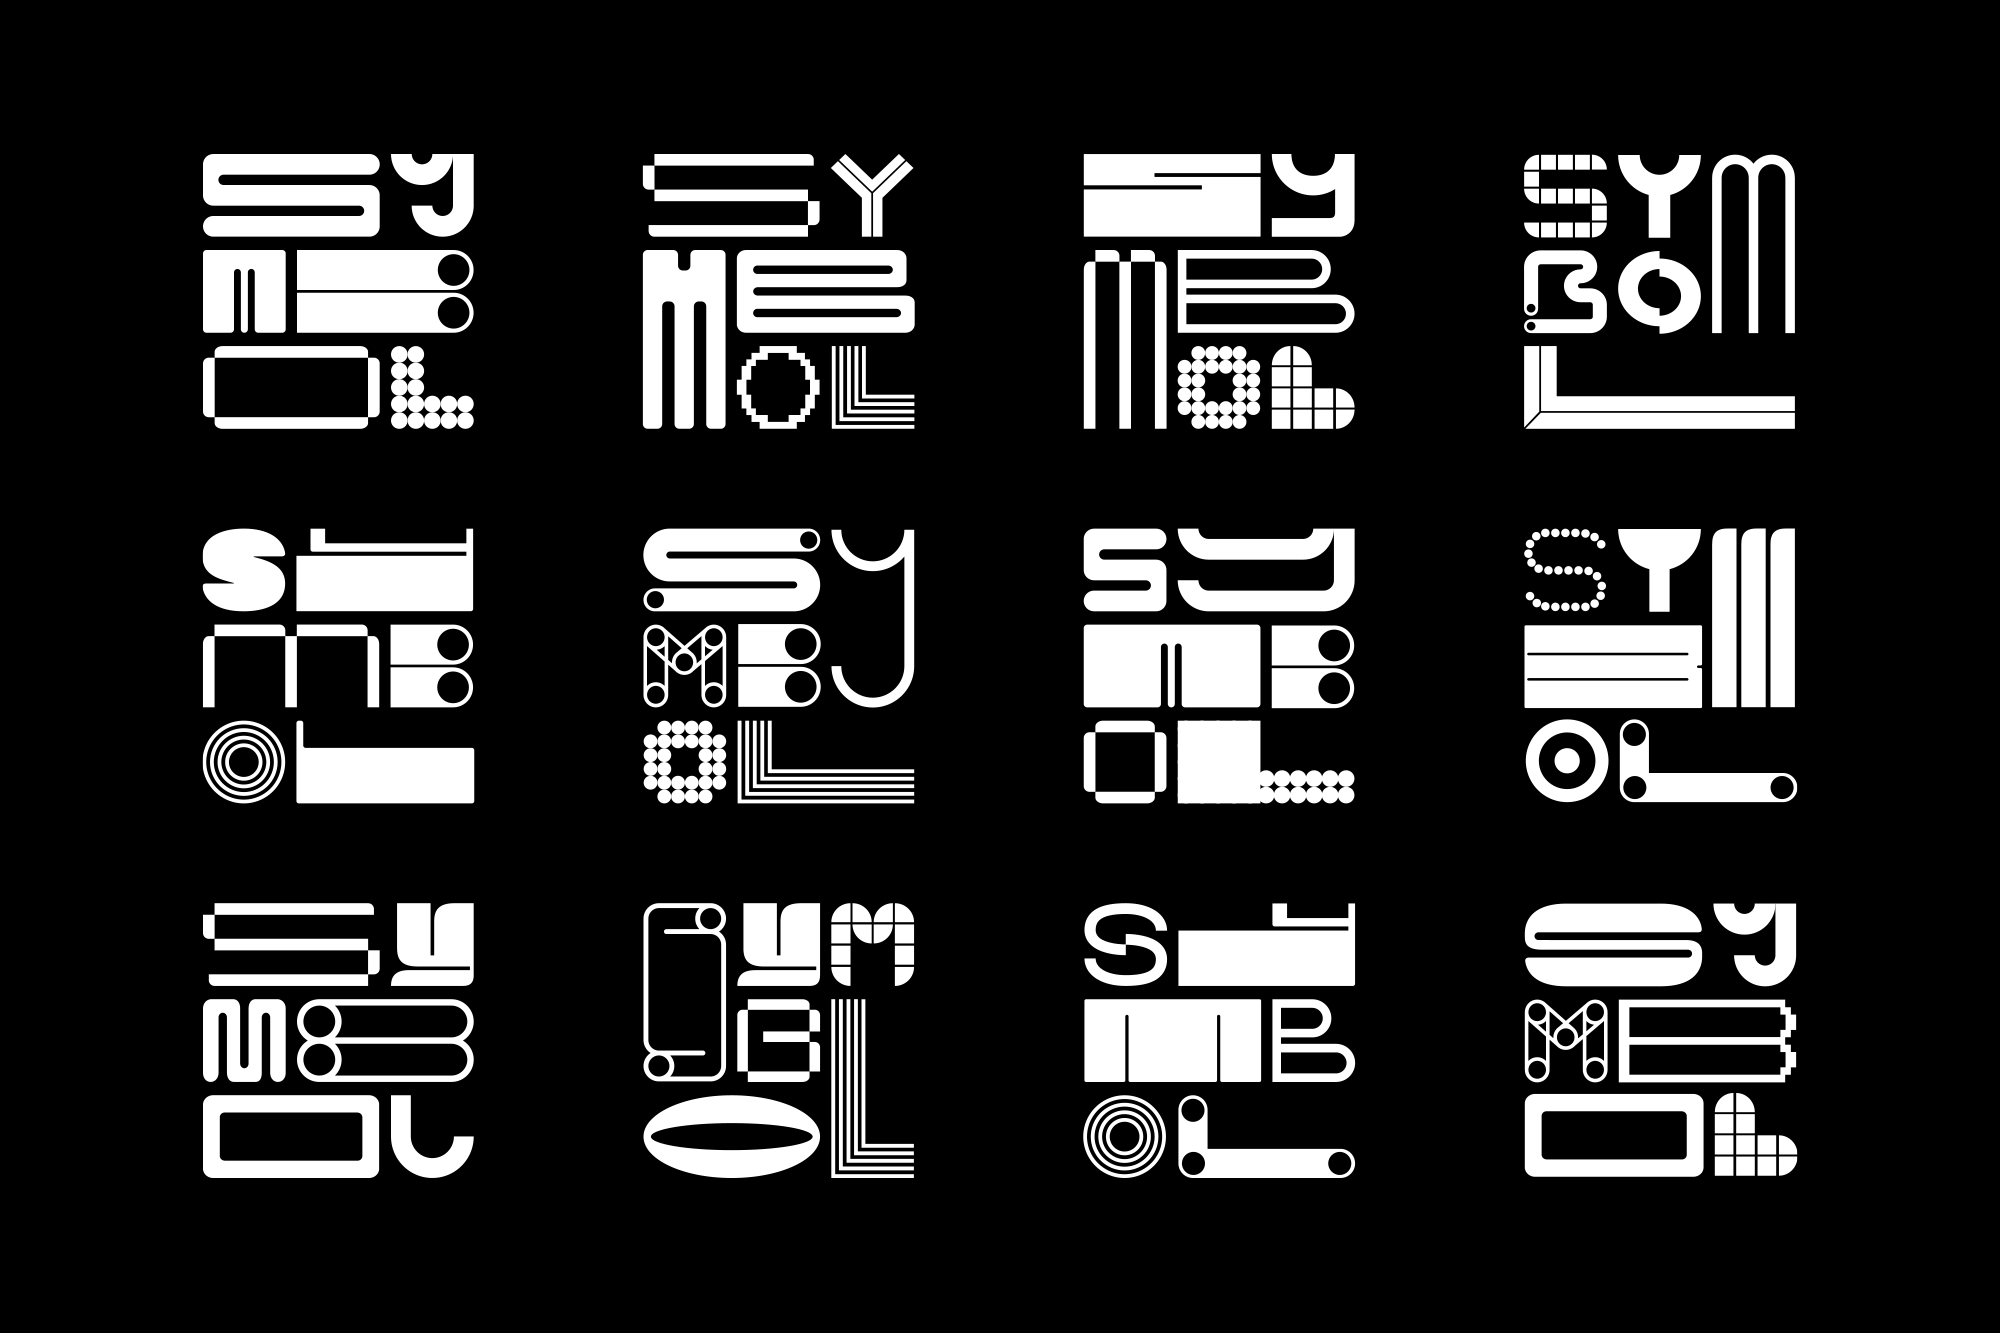 Symbol typographic type treatment